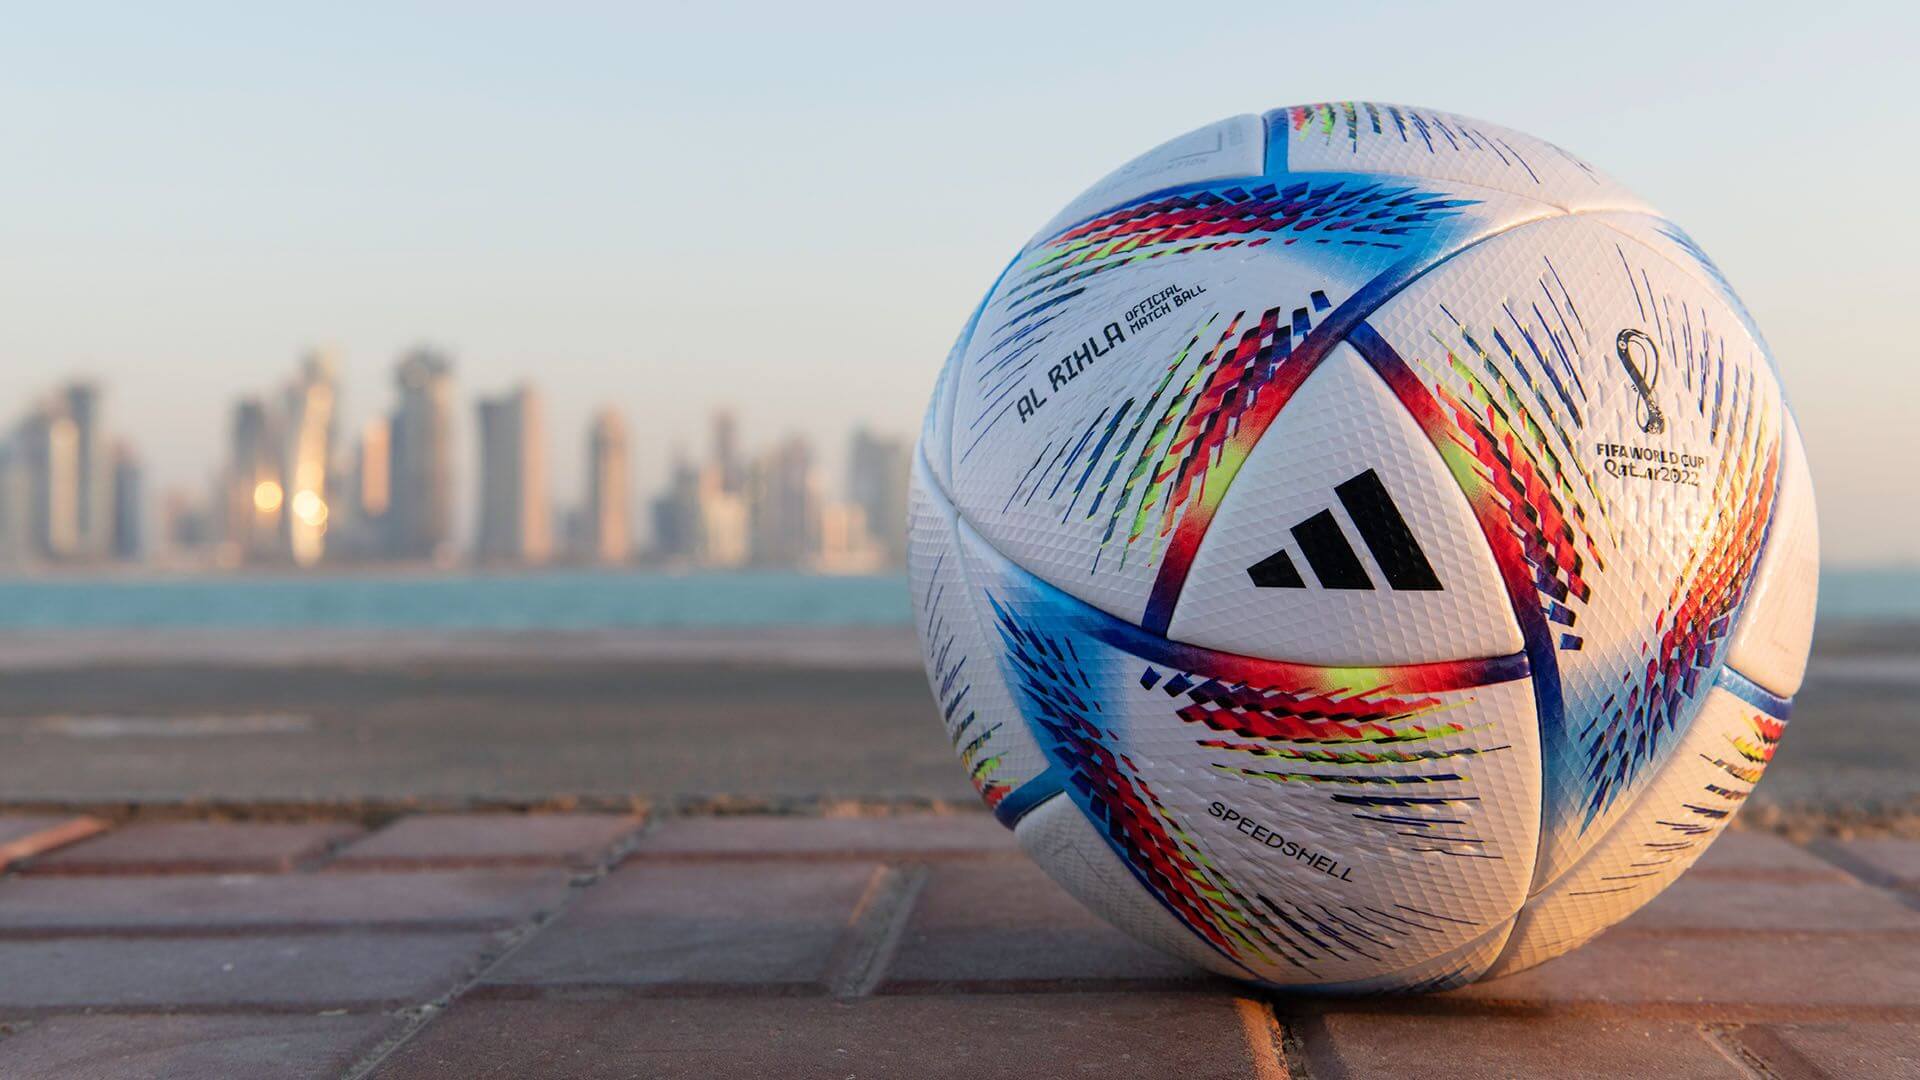 Новейшие технологии и датчики внутри. Каким мячом сыграют на Чемпионате мира в Катаре?